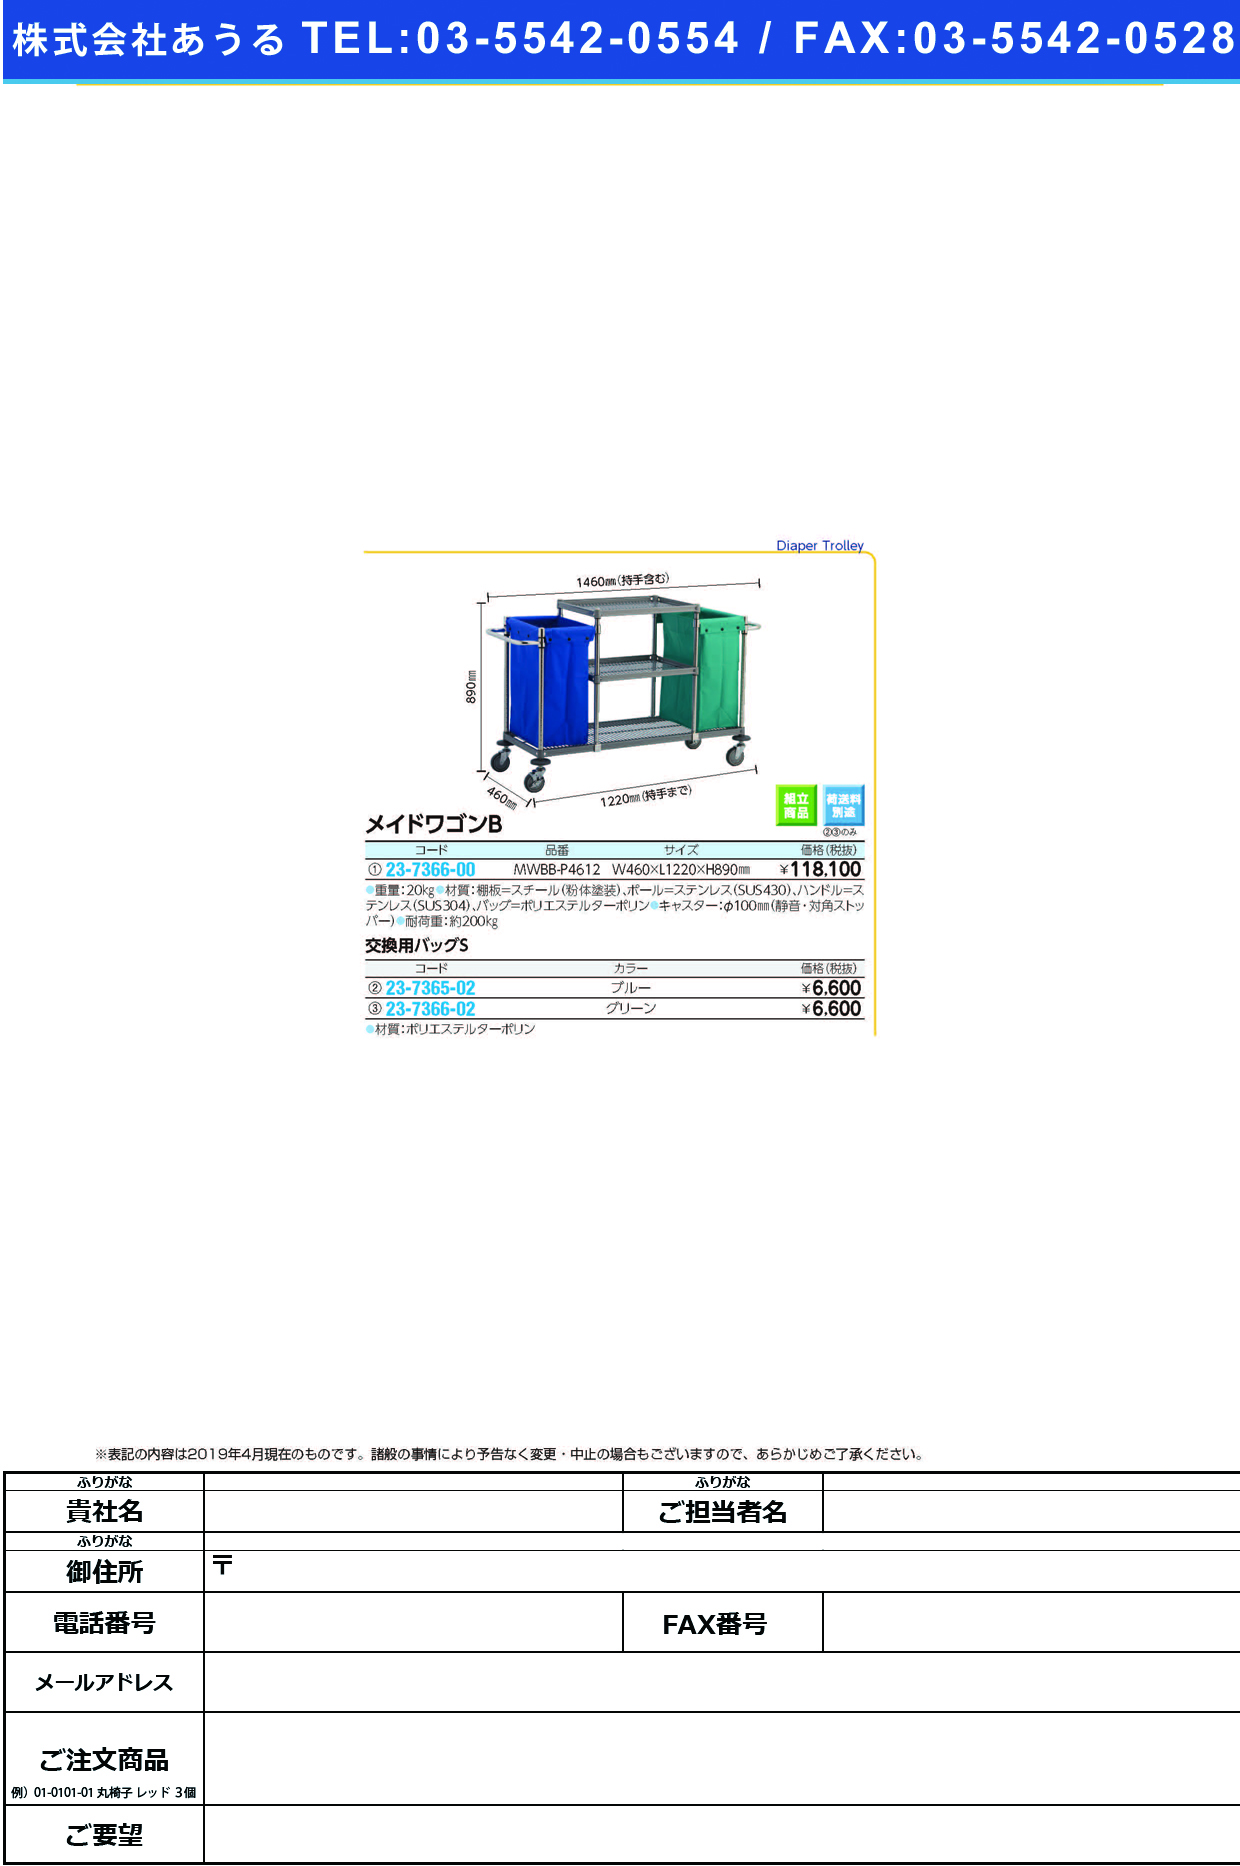 (23-7366-00)メイドワゴンＢ MWBB-P4612 ﾒｲﾄﾞﾜｺﾞﾝB【1台単位】【2019年カタログ商品】